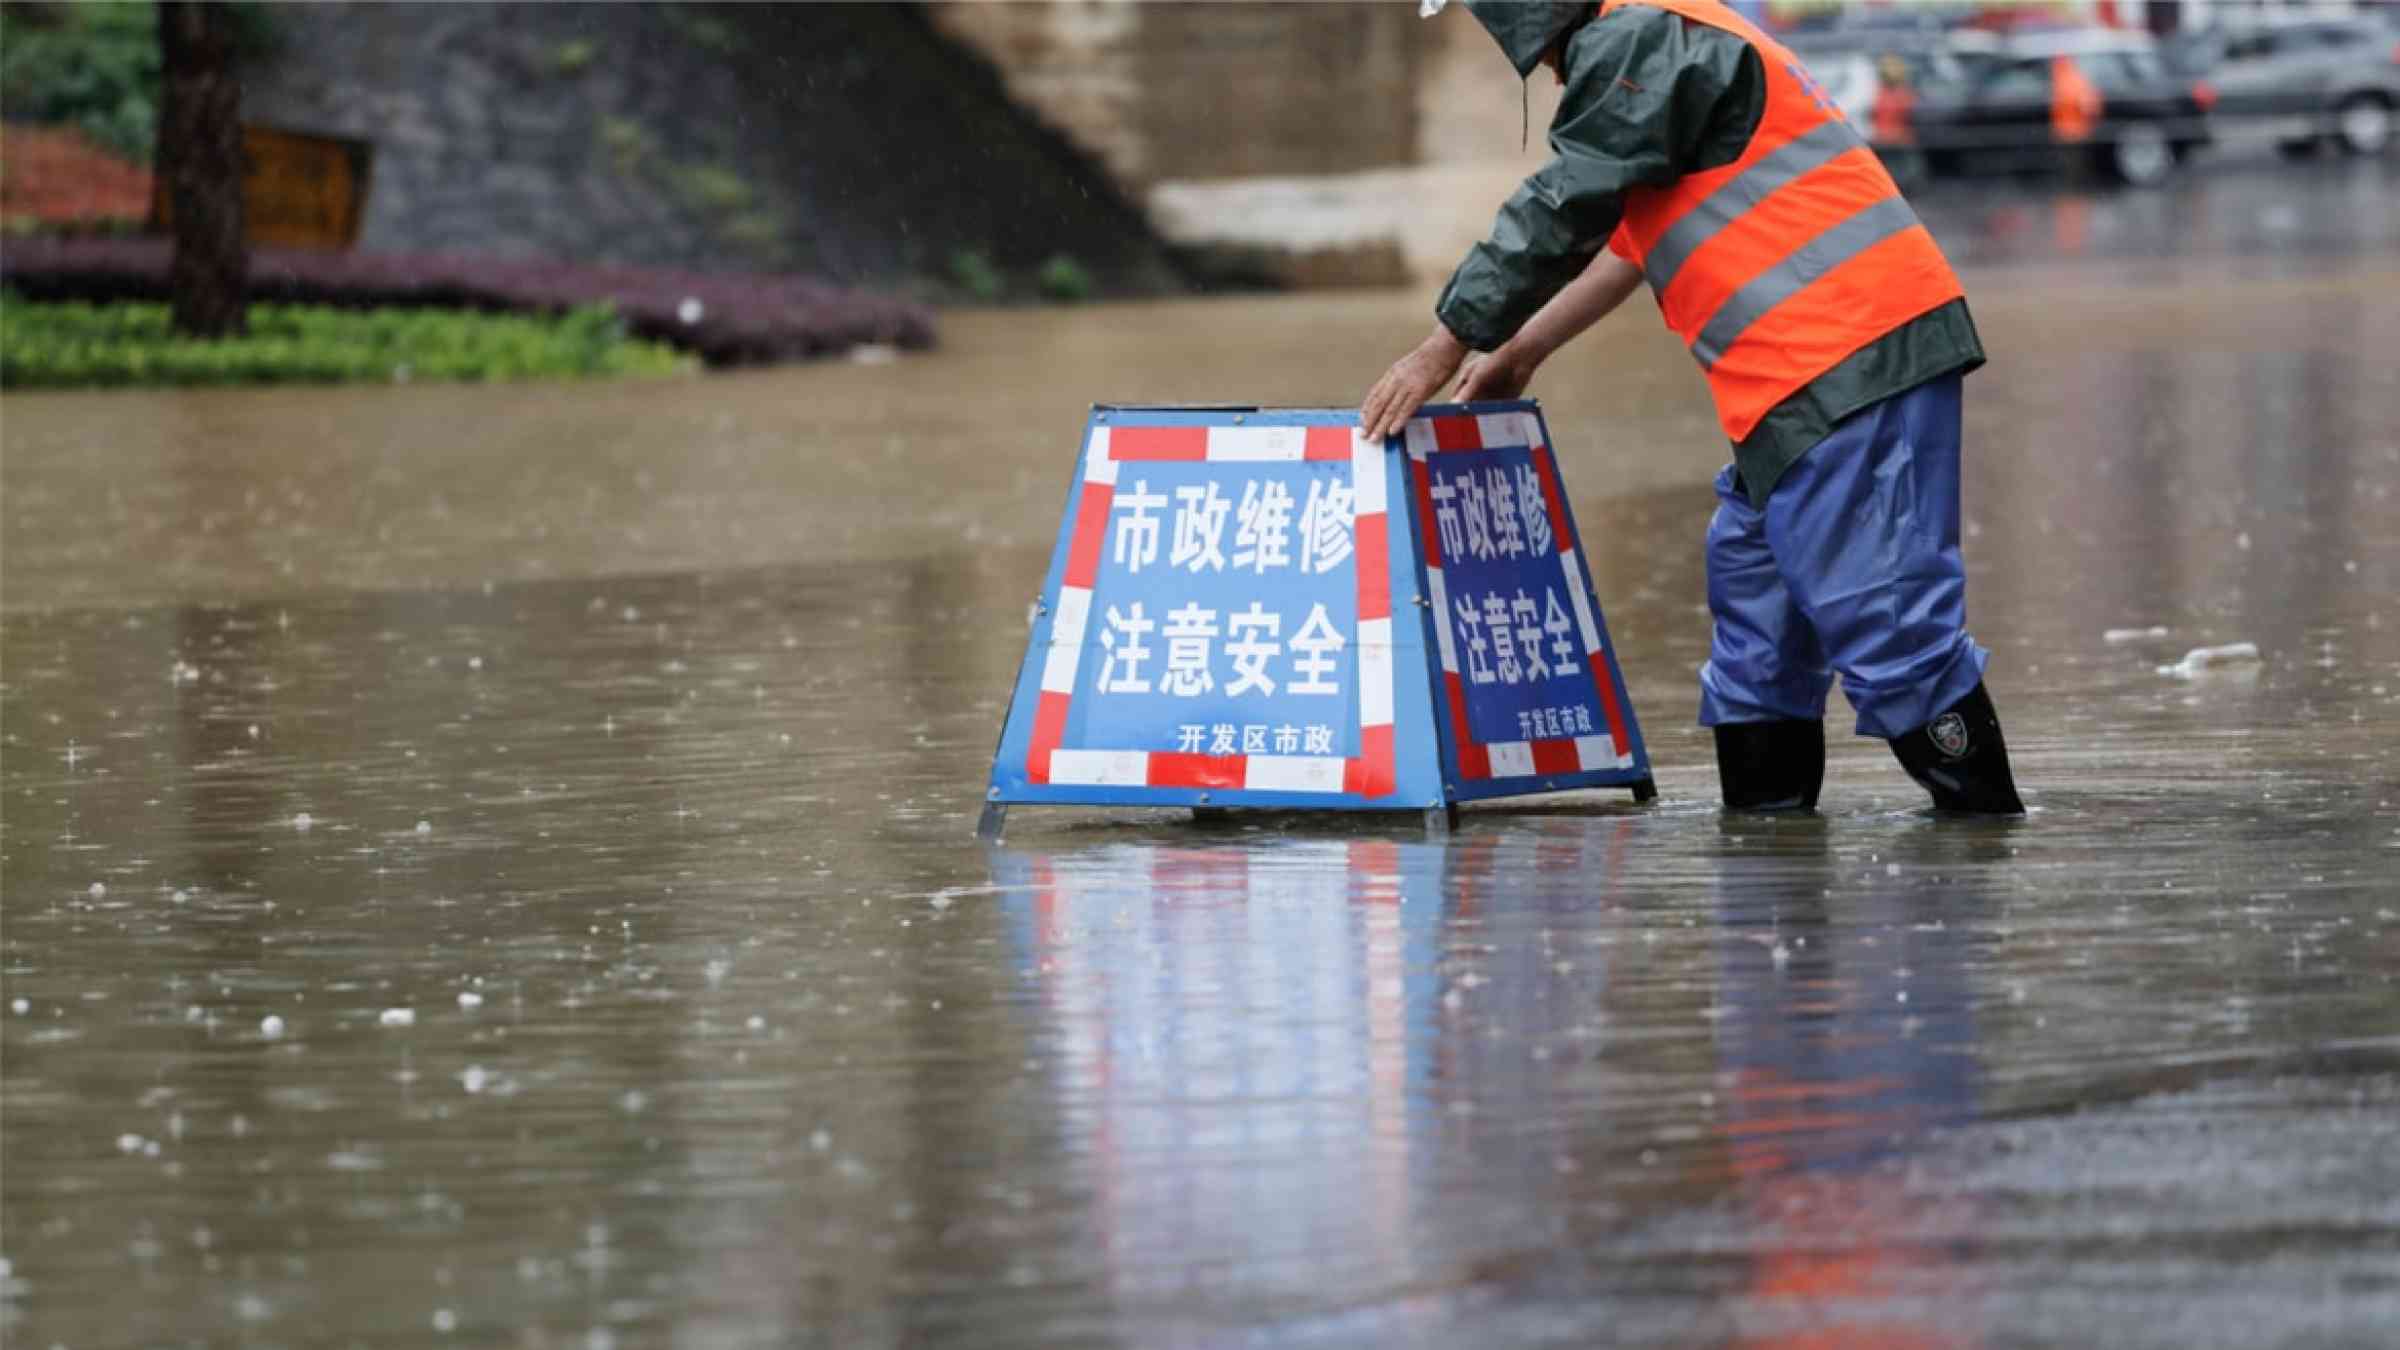 Floods in Jiujiang, China in 2017